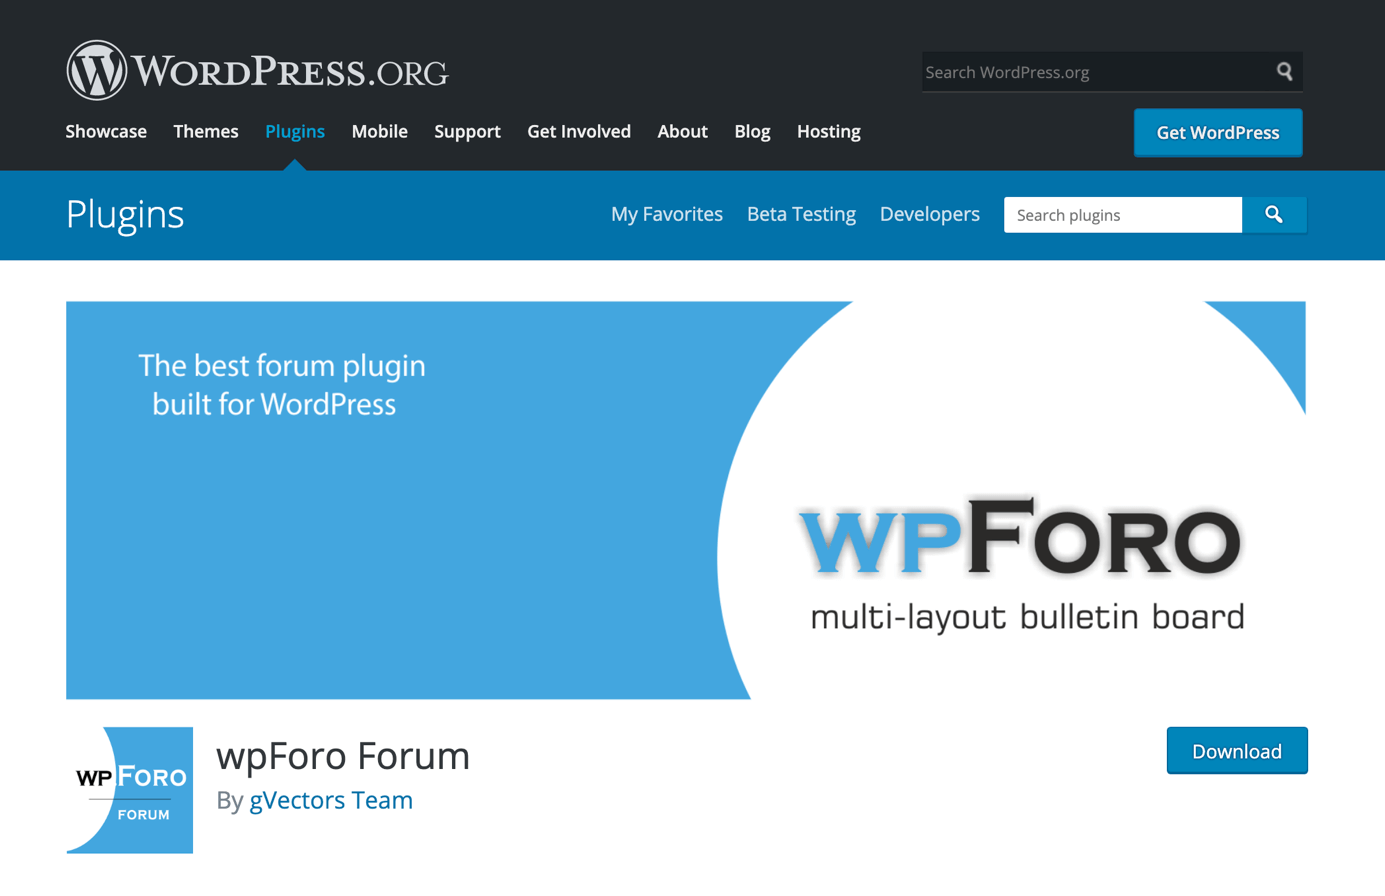 Página para descargar wpForo Forum en WordPress.org